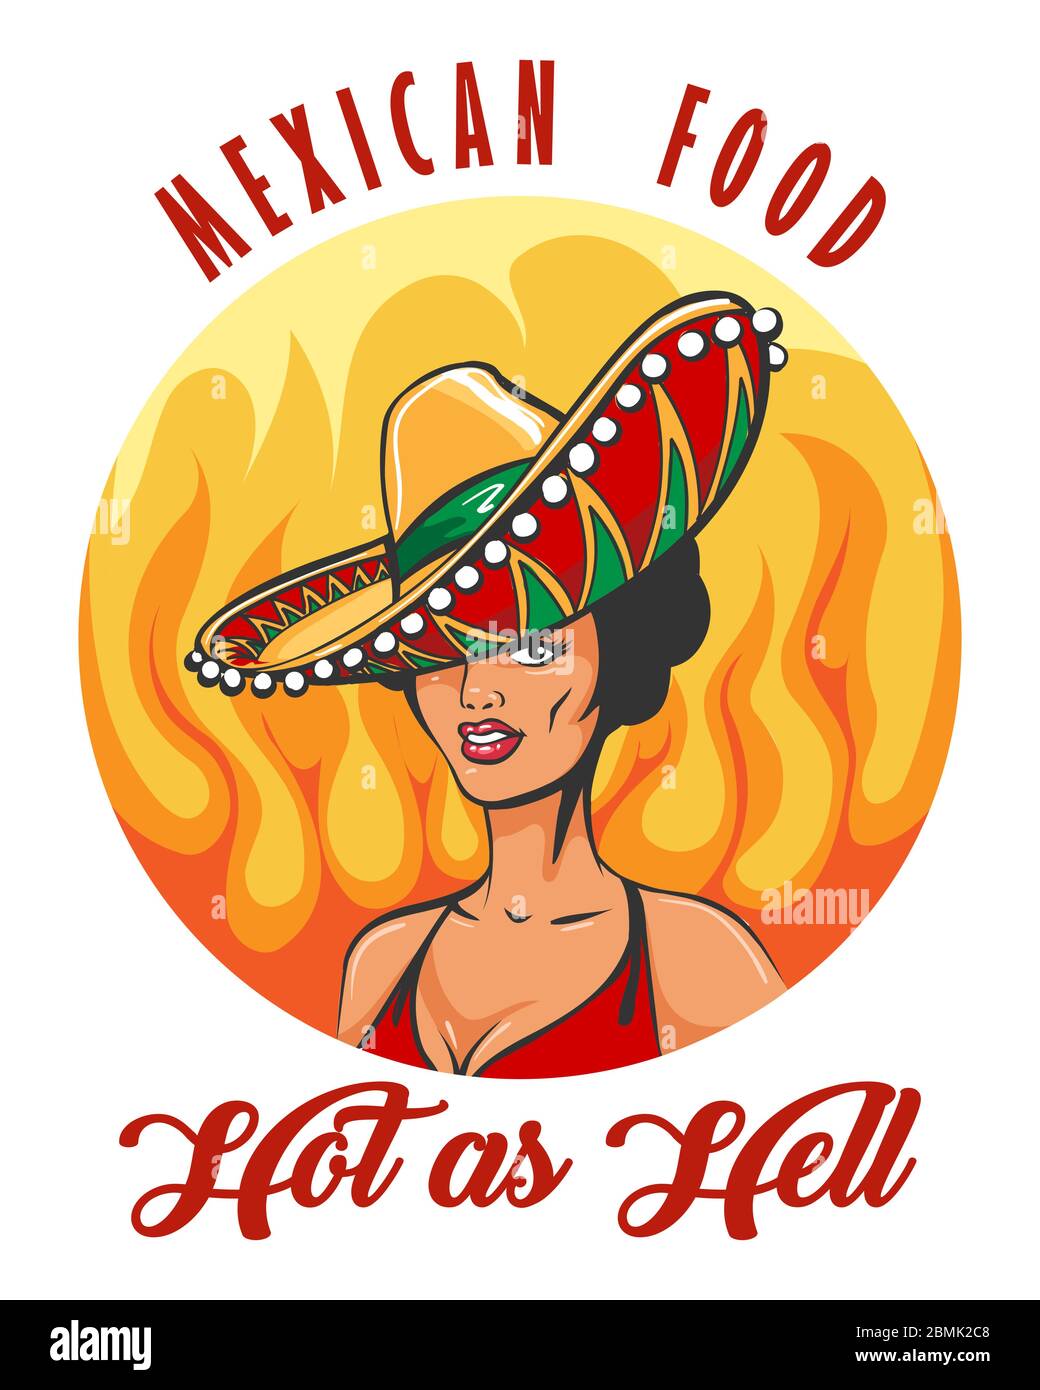 Mexikanisches Essen mit hübschen Frau in Sombrero Hut im Retro-Stil gezeichnet. Vektorgrafik. Stock Vektor